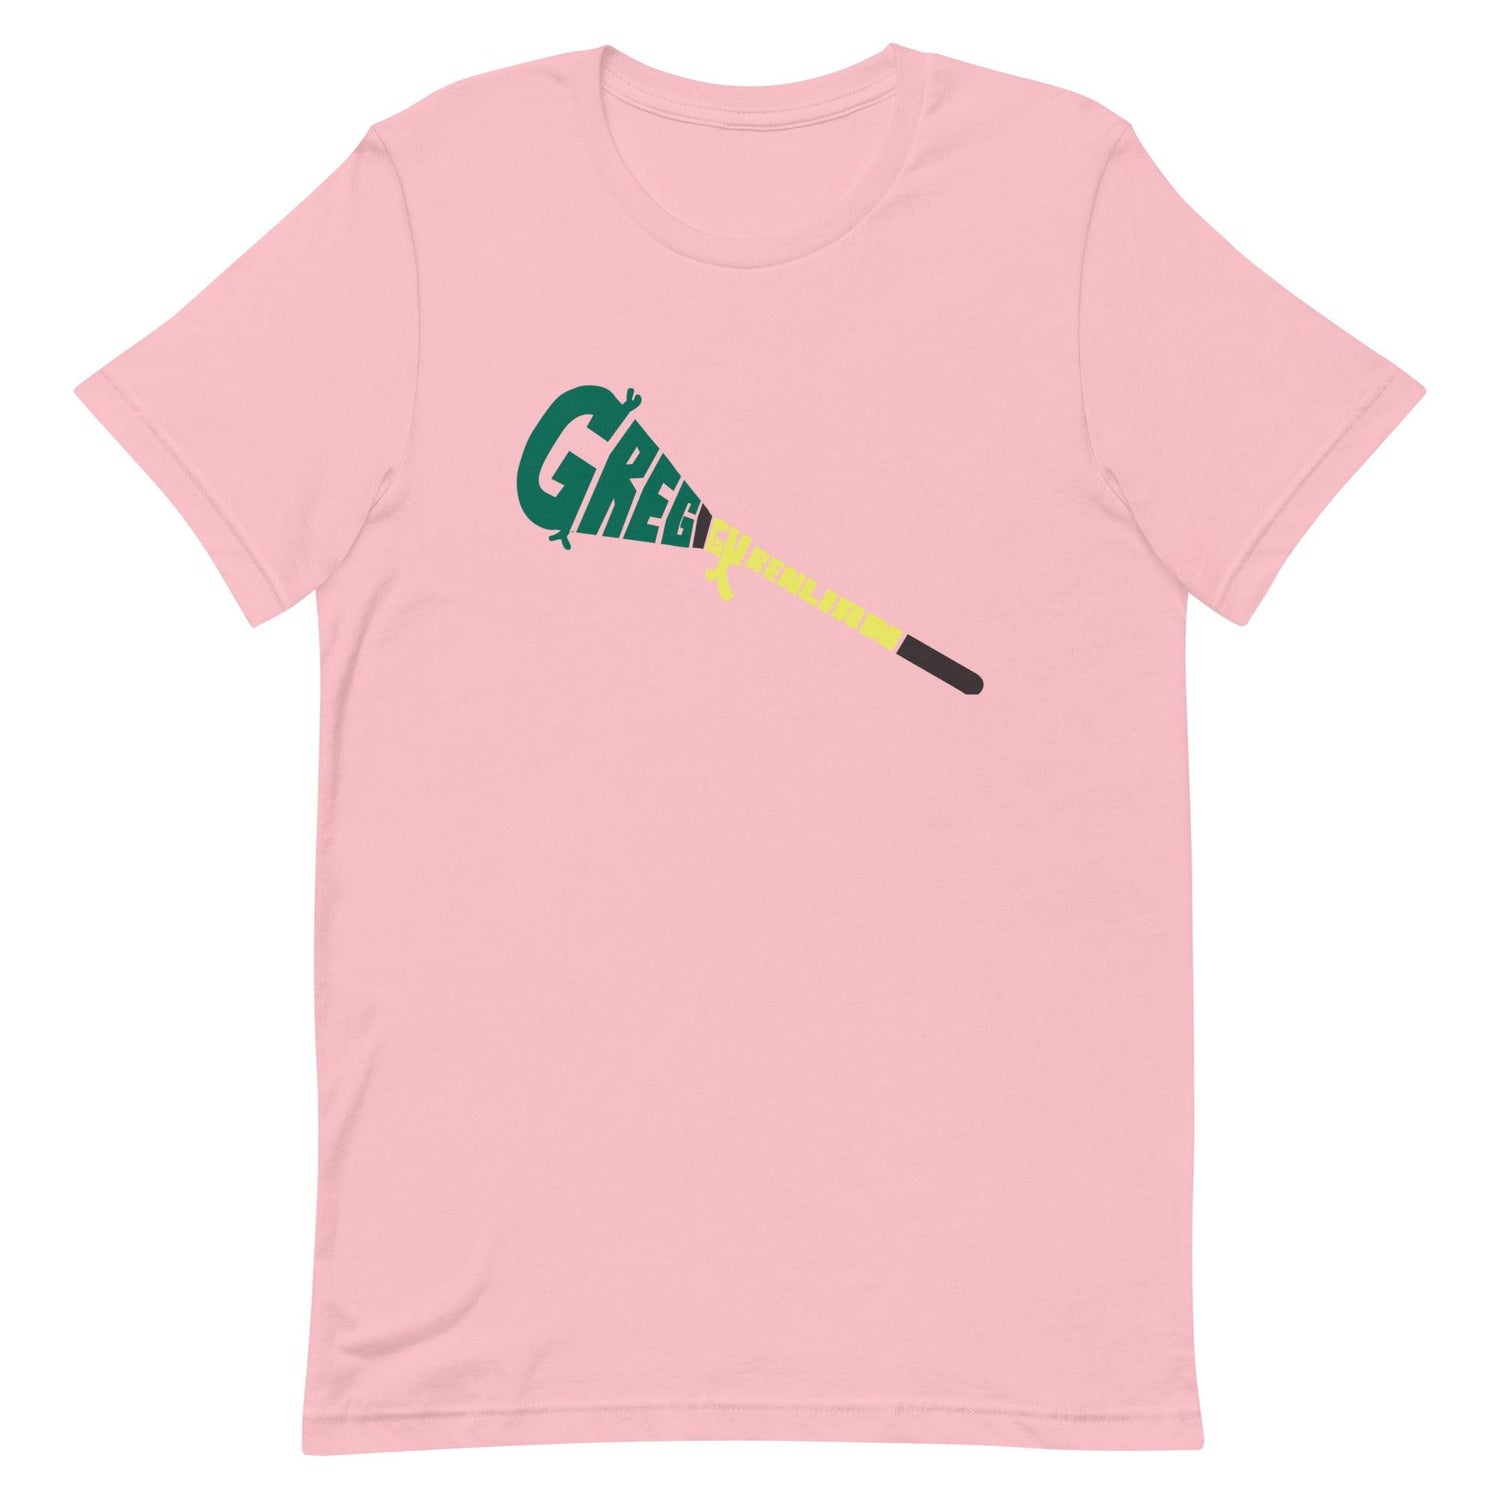 Greg Gurenlian "Essential" t-shirt - Fan Arch